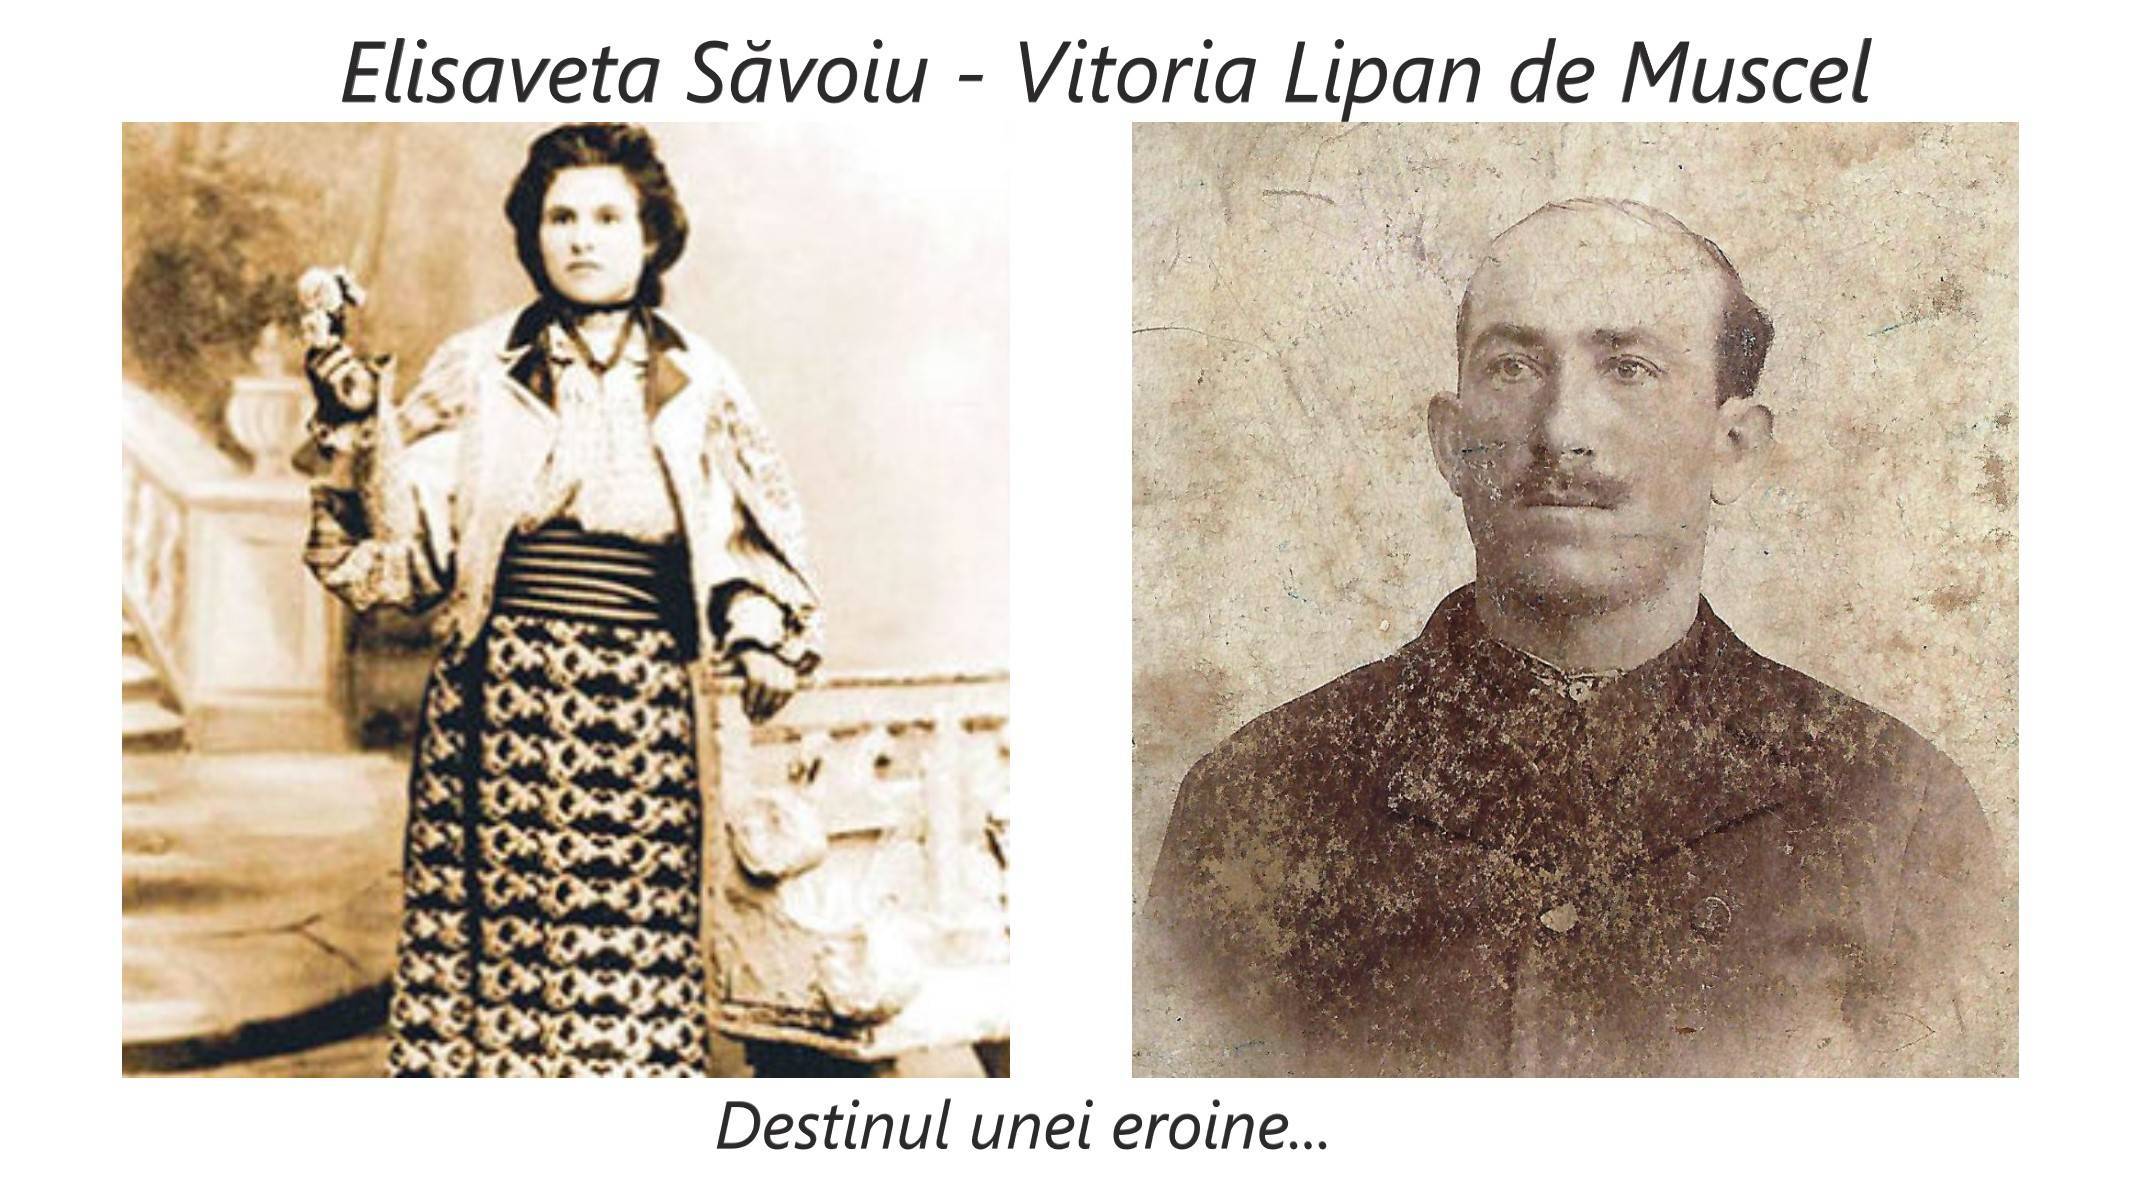 Elisaveta Săvoiu. Eroina din Argeș cunoscută ca „Vitoria Lipan”. A plecat la război, în căutarea ostașului pierdut